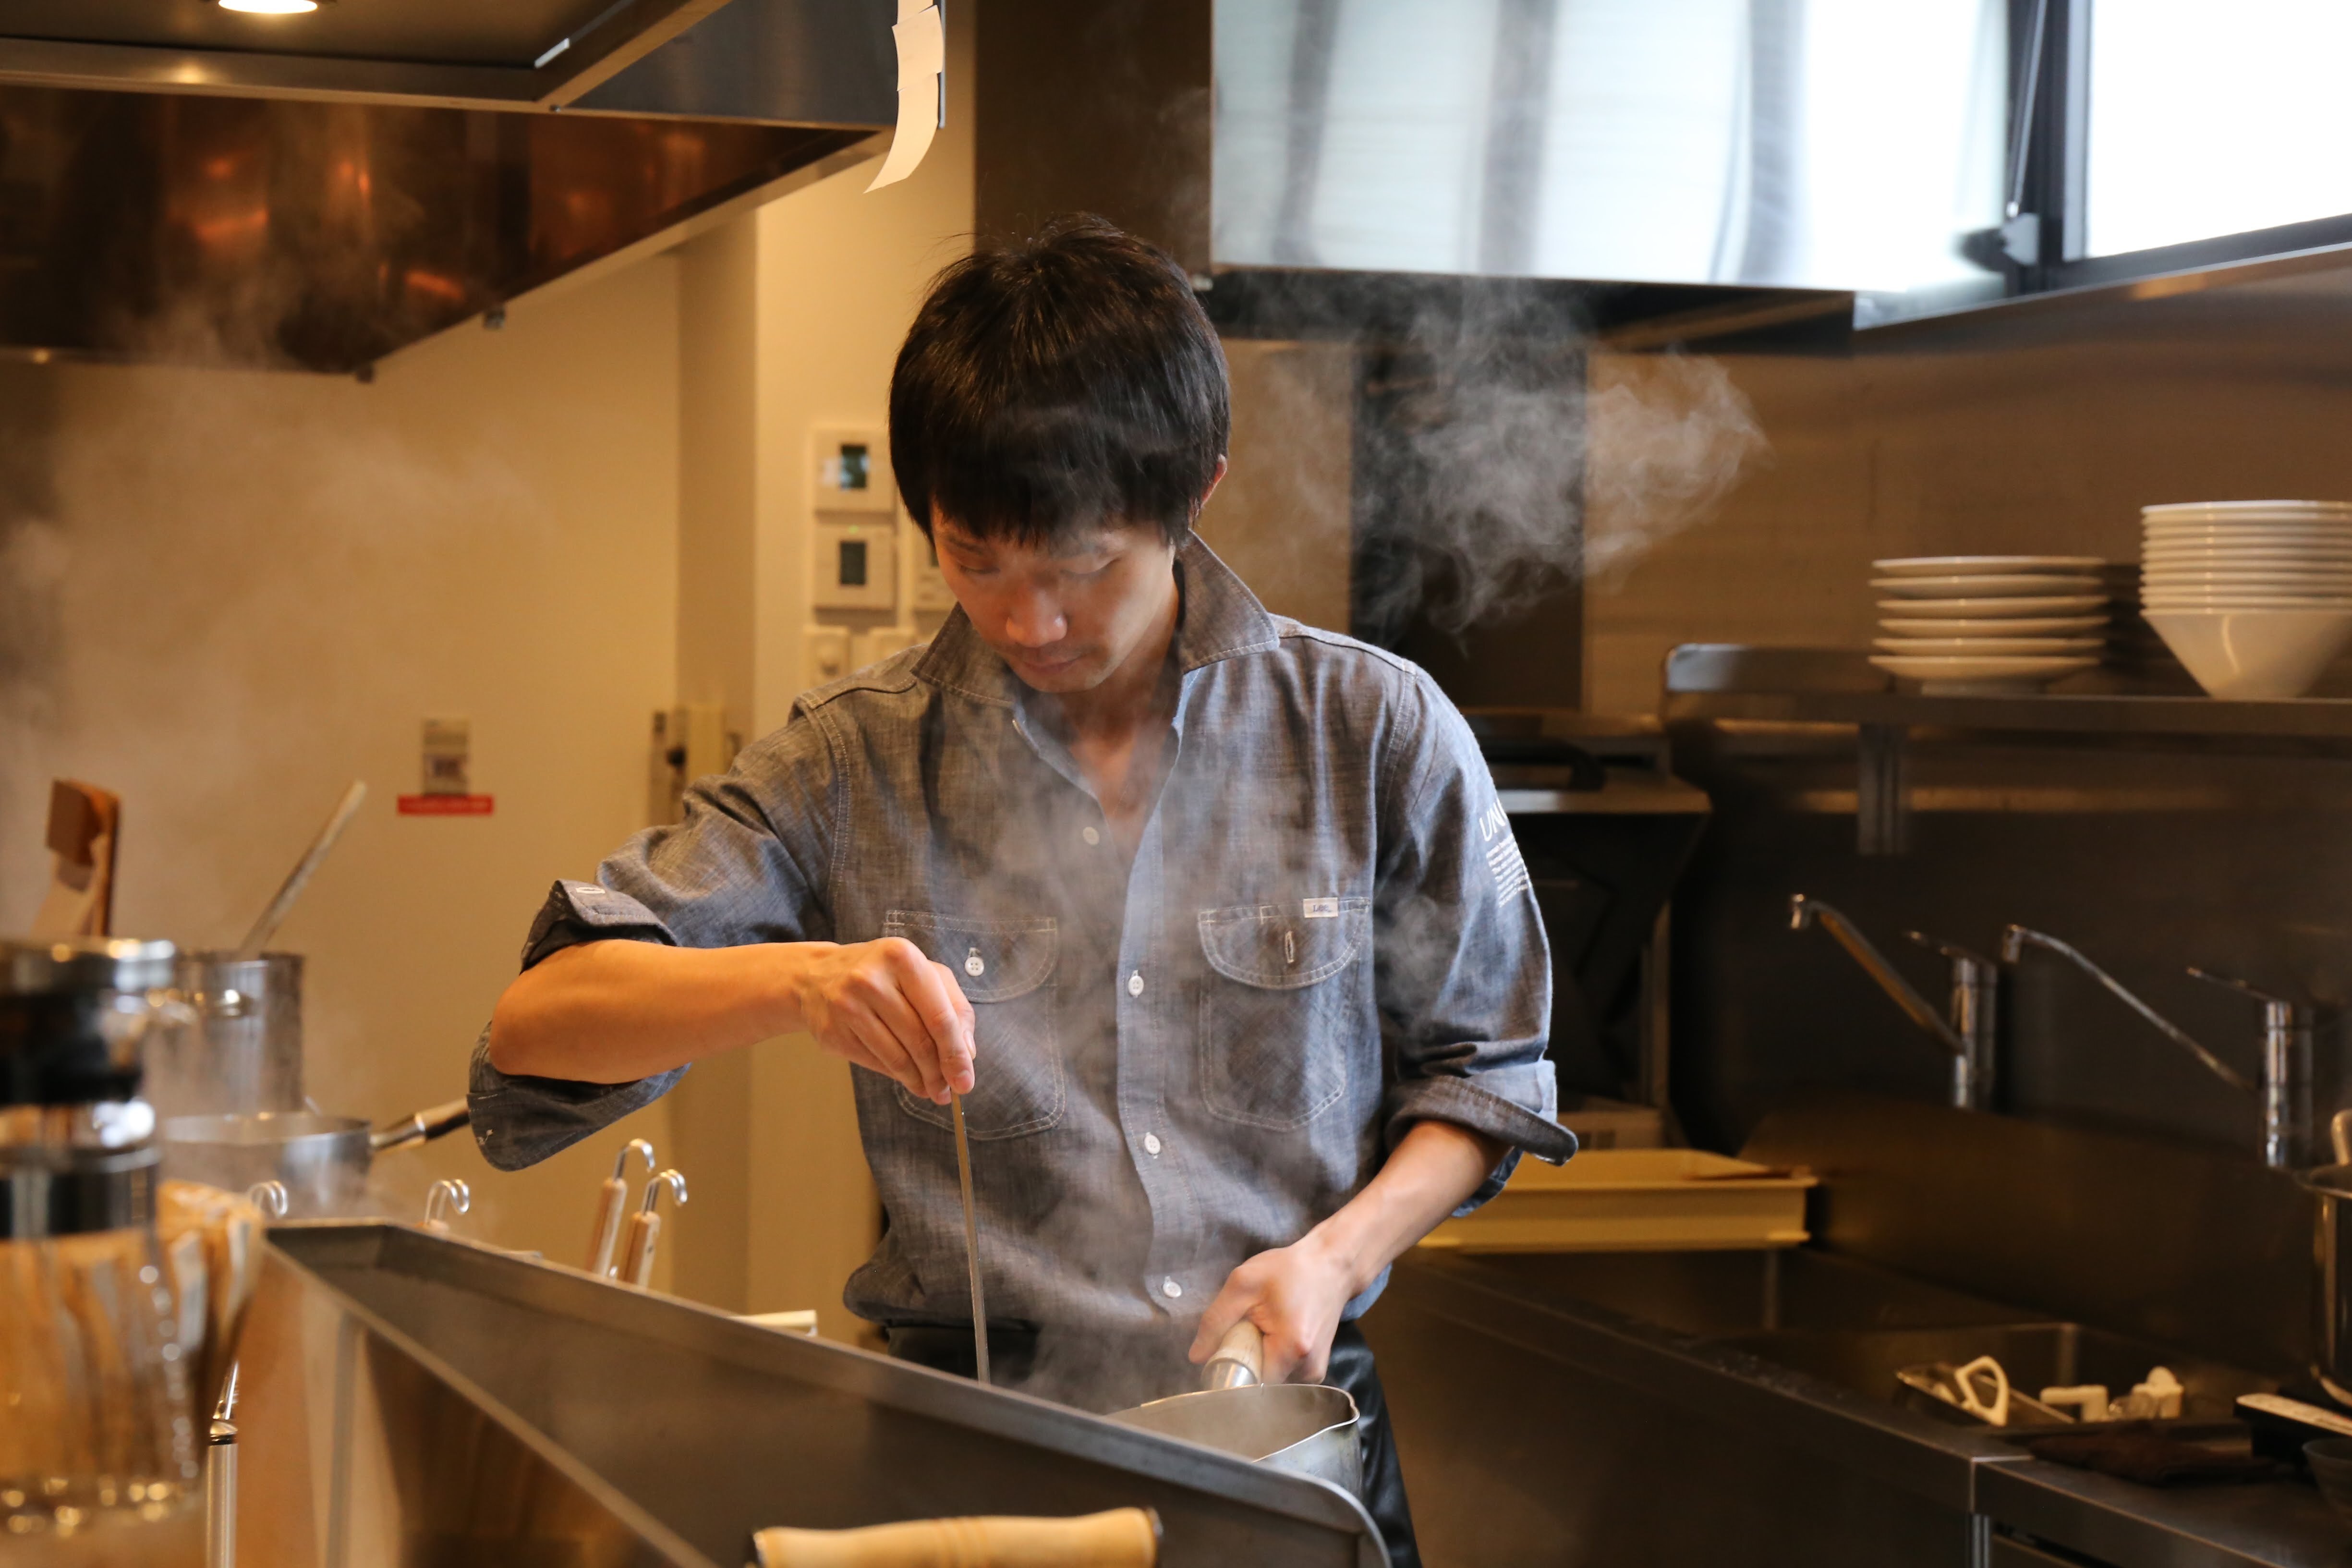 人類みな麺類の創業者 松村貴大が Takahiro Matsumura Produce として新グループを立ち上げ 担担麺の掟を破る者のプレスリリース